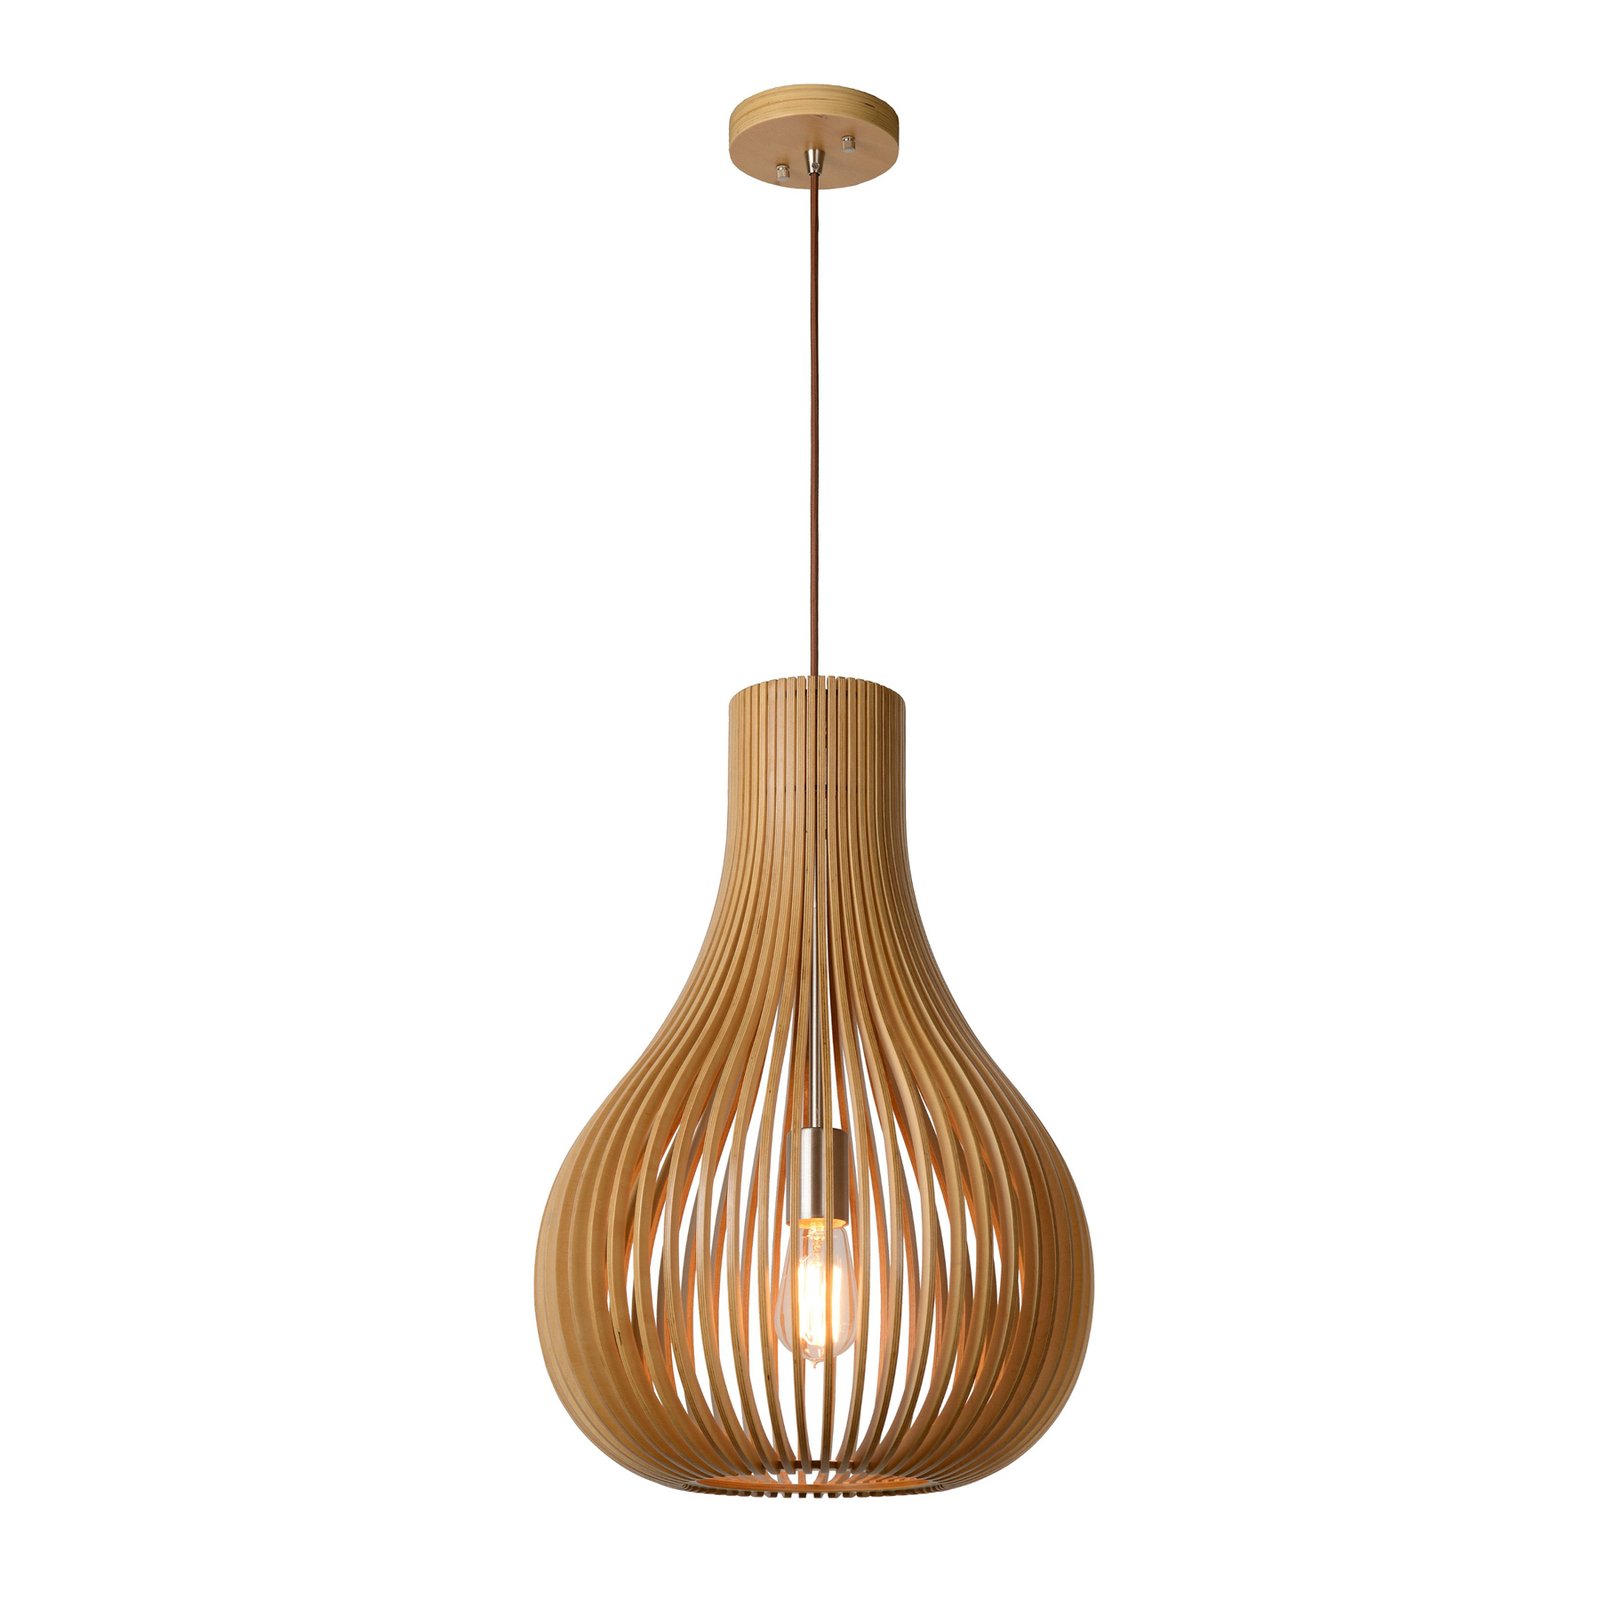 Bodo hanglamp, lichtgekleurd hout